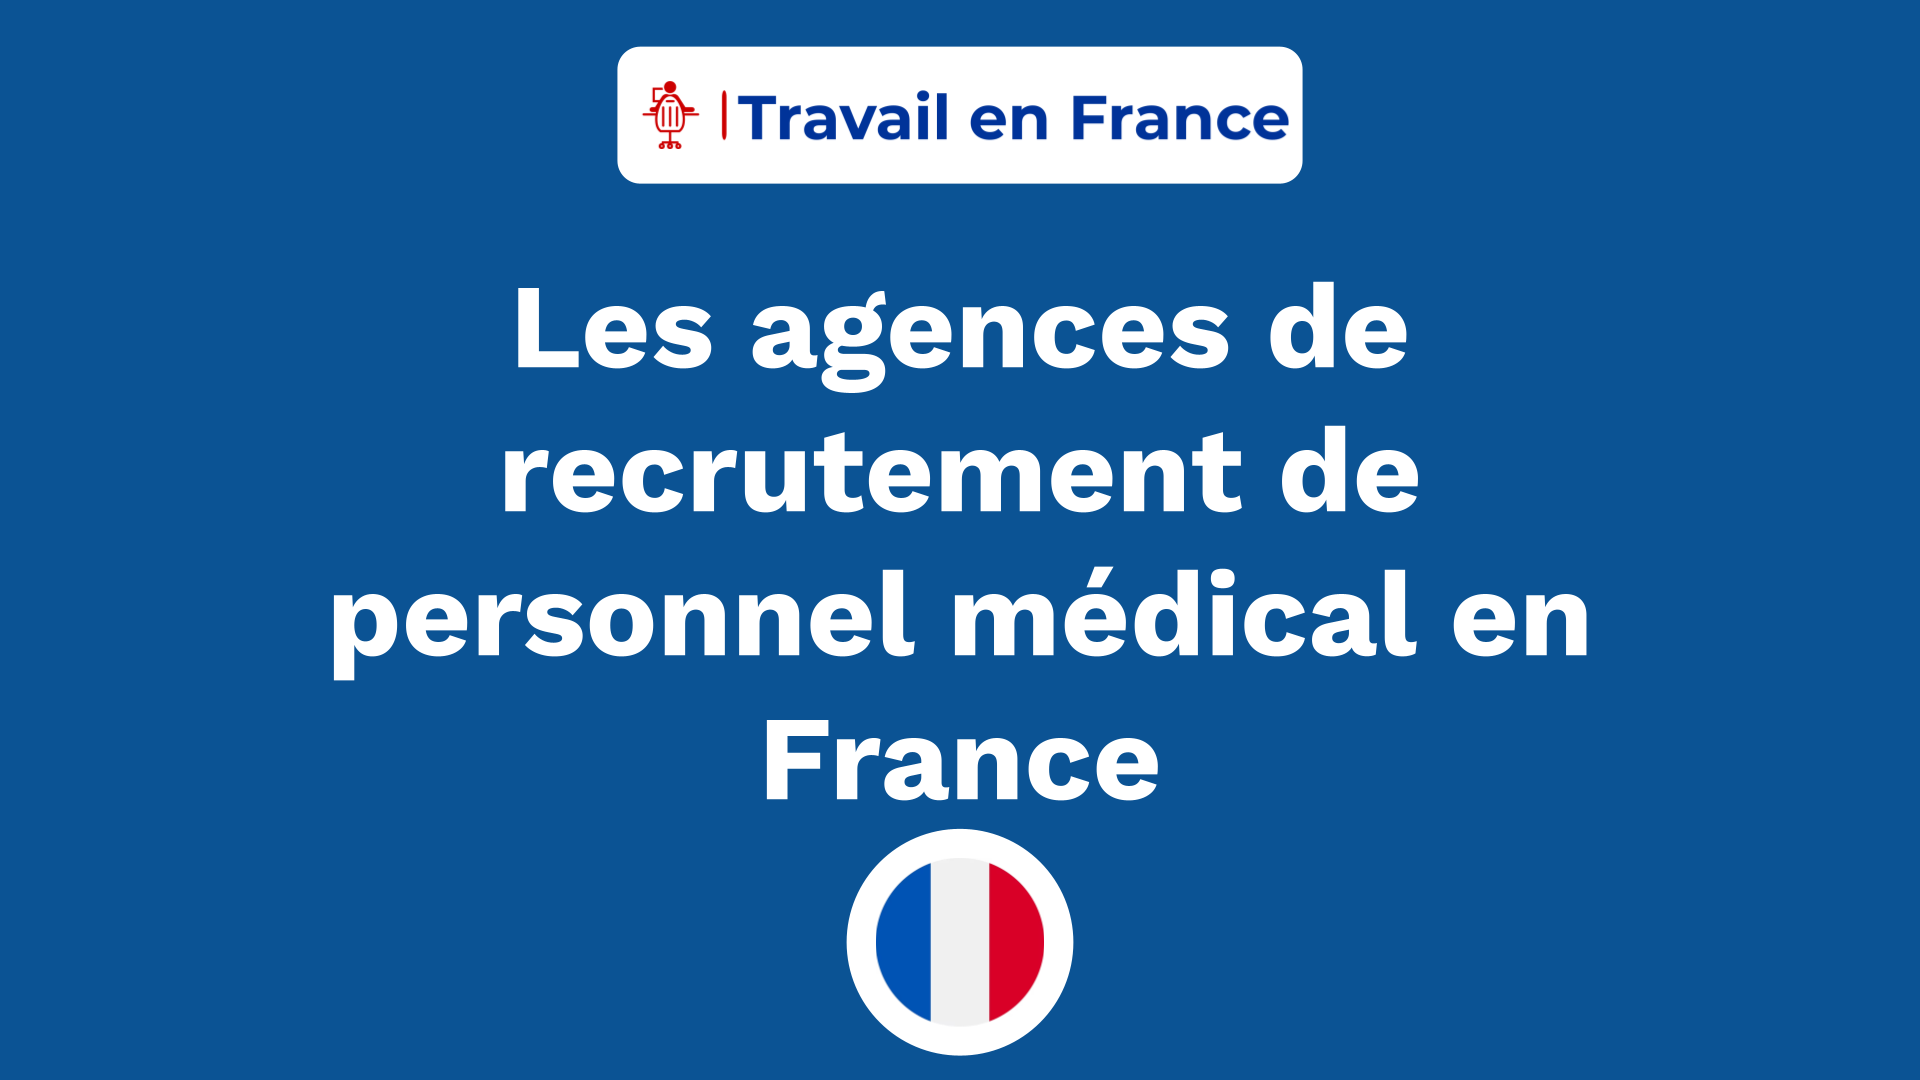 Les agences de recrutement de personnel médical en France